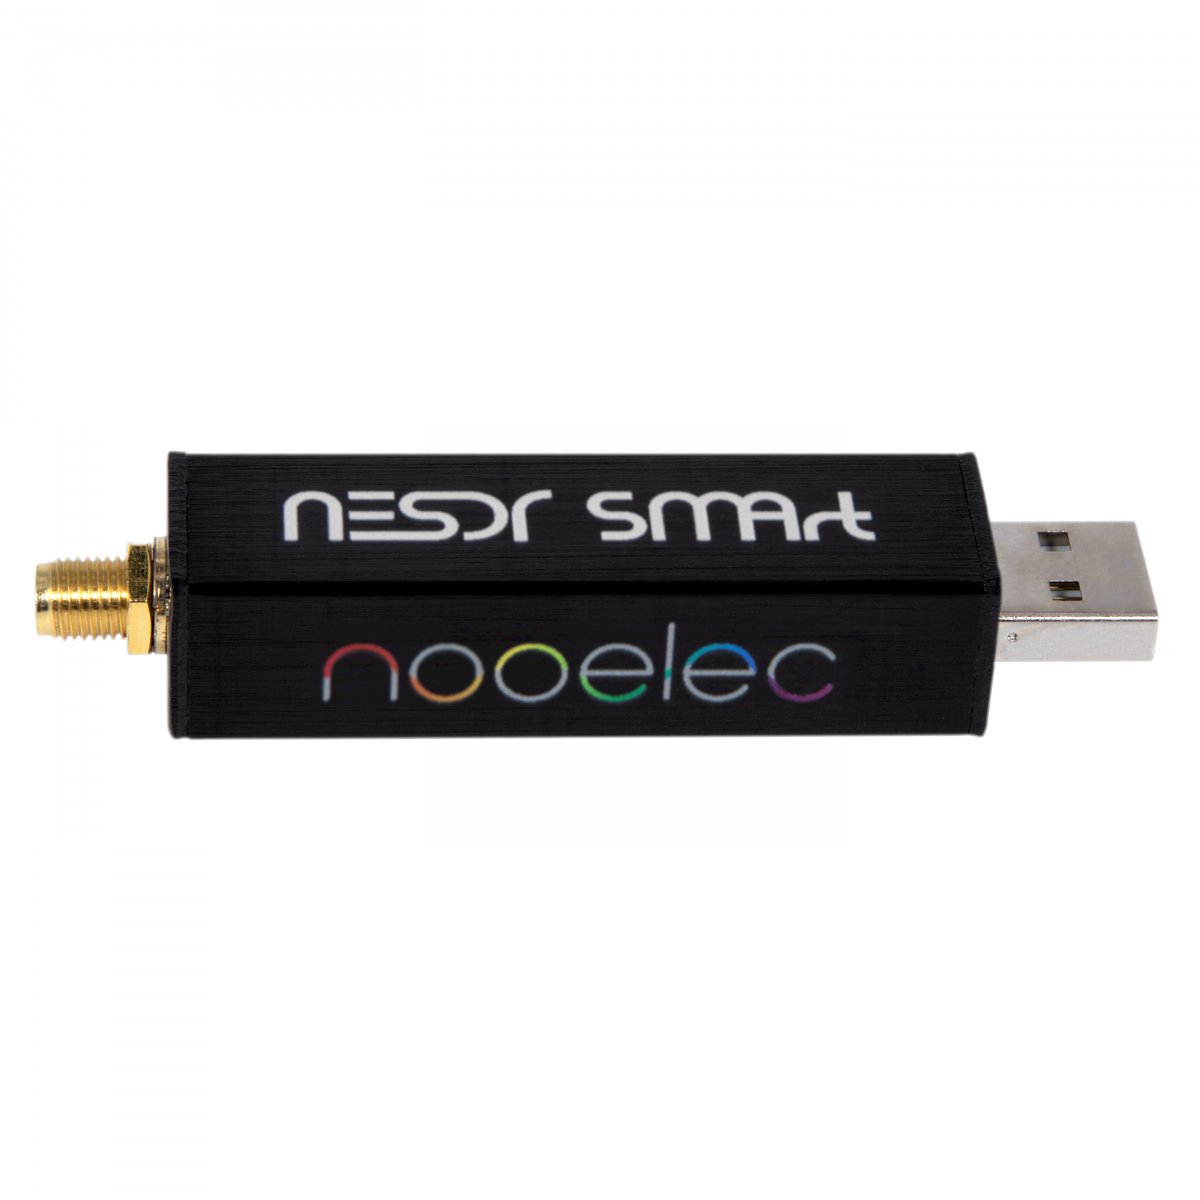 Nooelec - Nooelec NESDR SMArt v5 SDR - HF/VHF/UHF () RTL-SDR.  RTL2832U & R820T2-Based Software Defined Radio - SDR Receivers - Software  Defined Radio